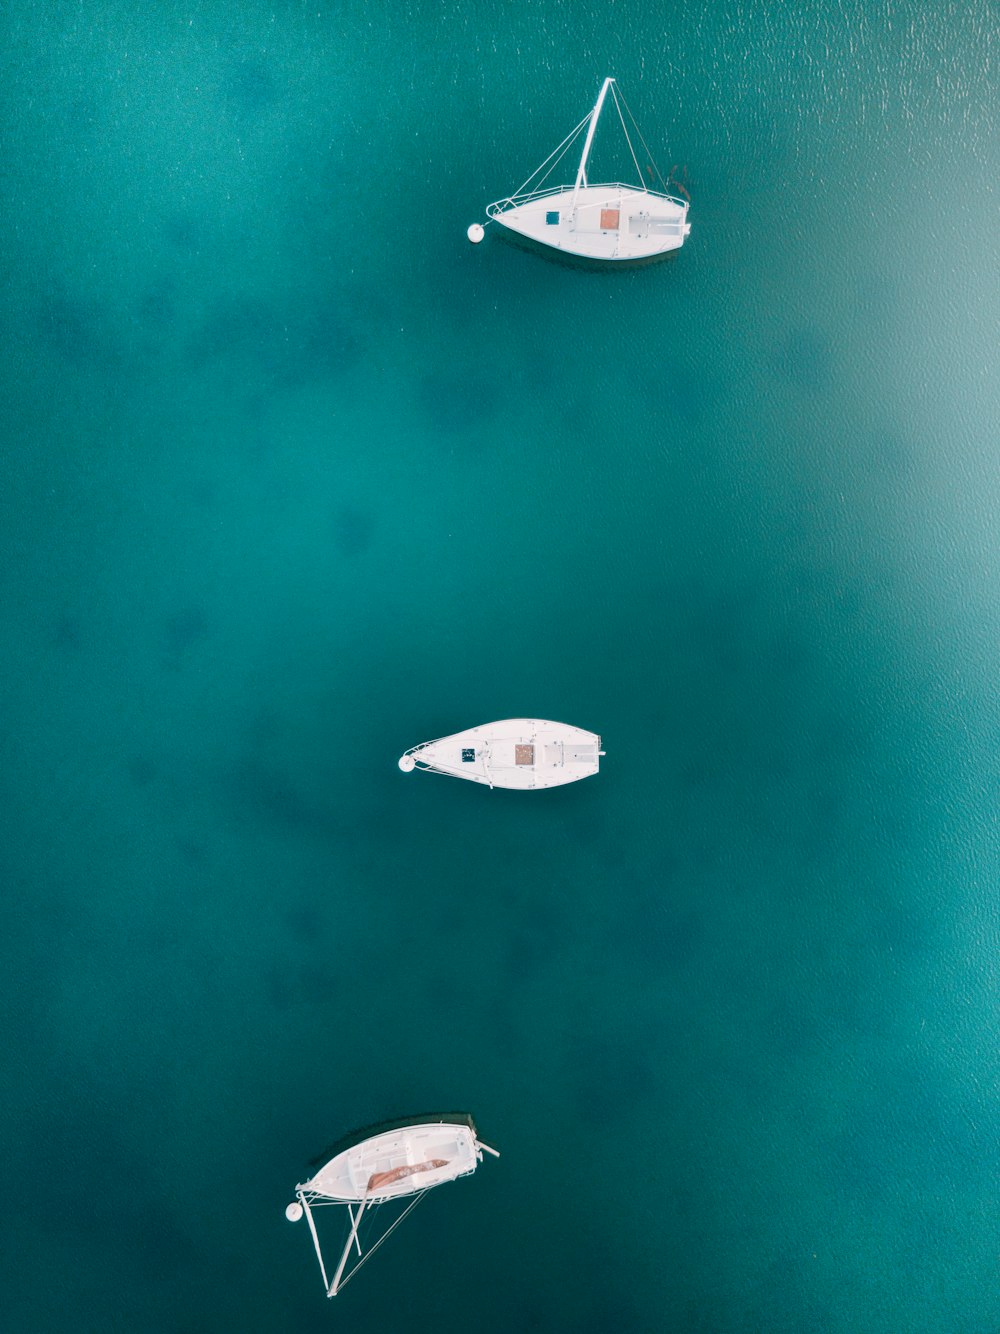 Vogelfotografie von drei weißen Booten